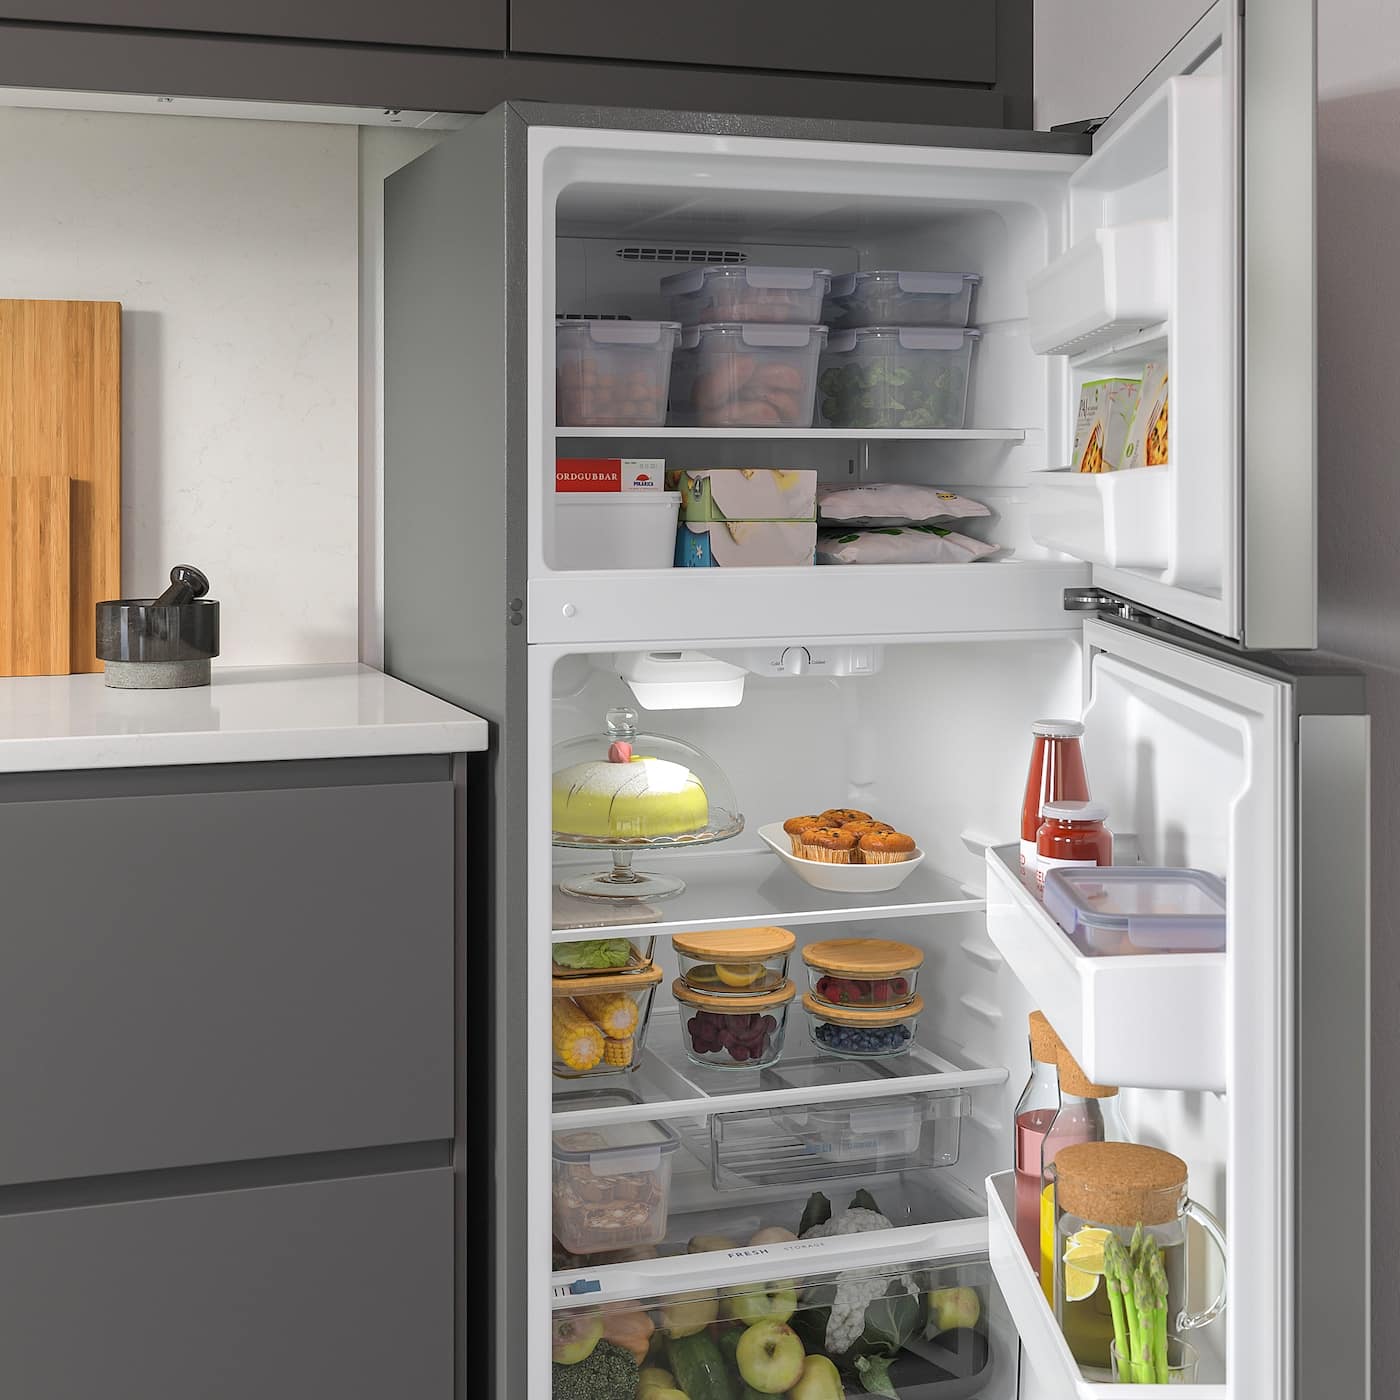 Freezer Door Not Sealing: 7 Easy Ways To Fix The Problem Now